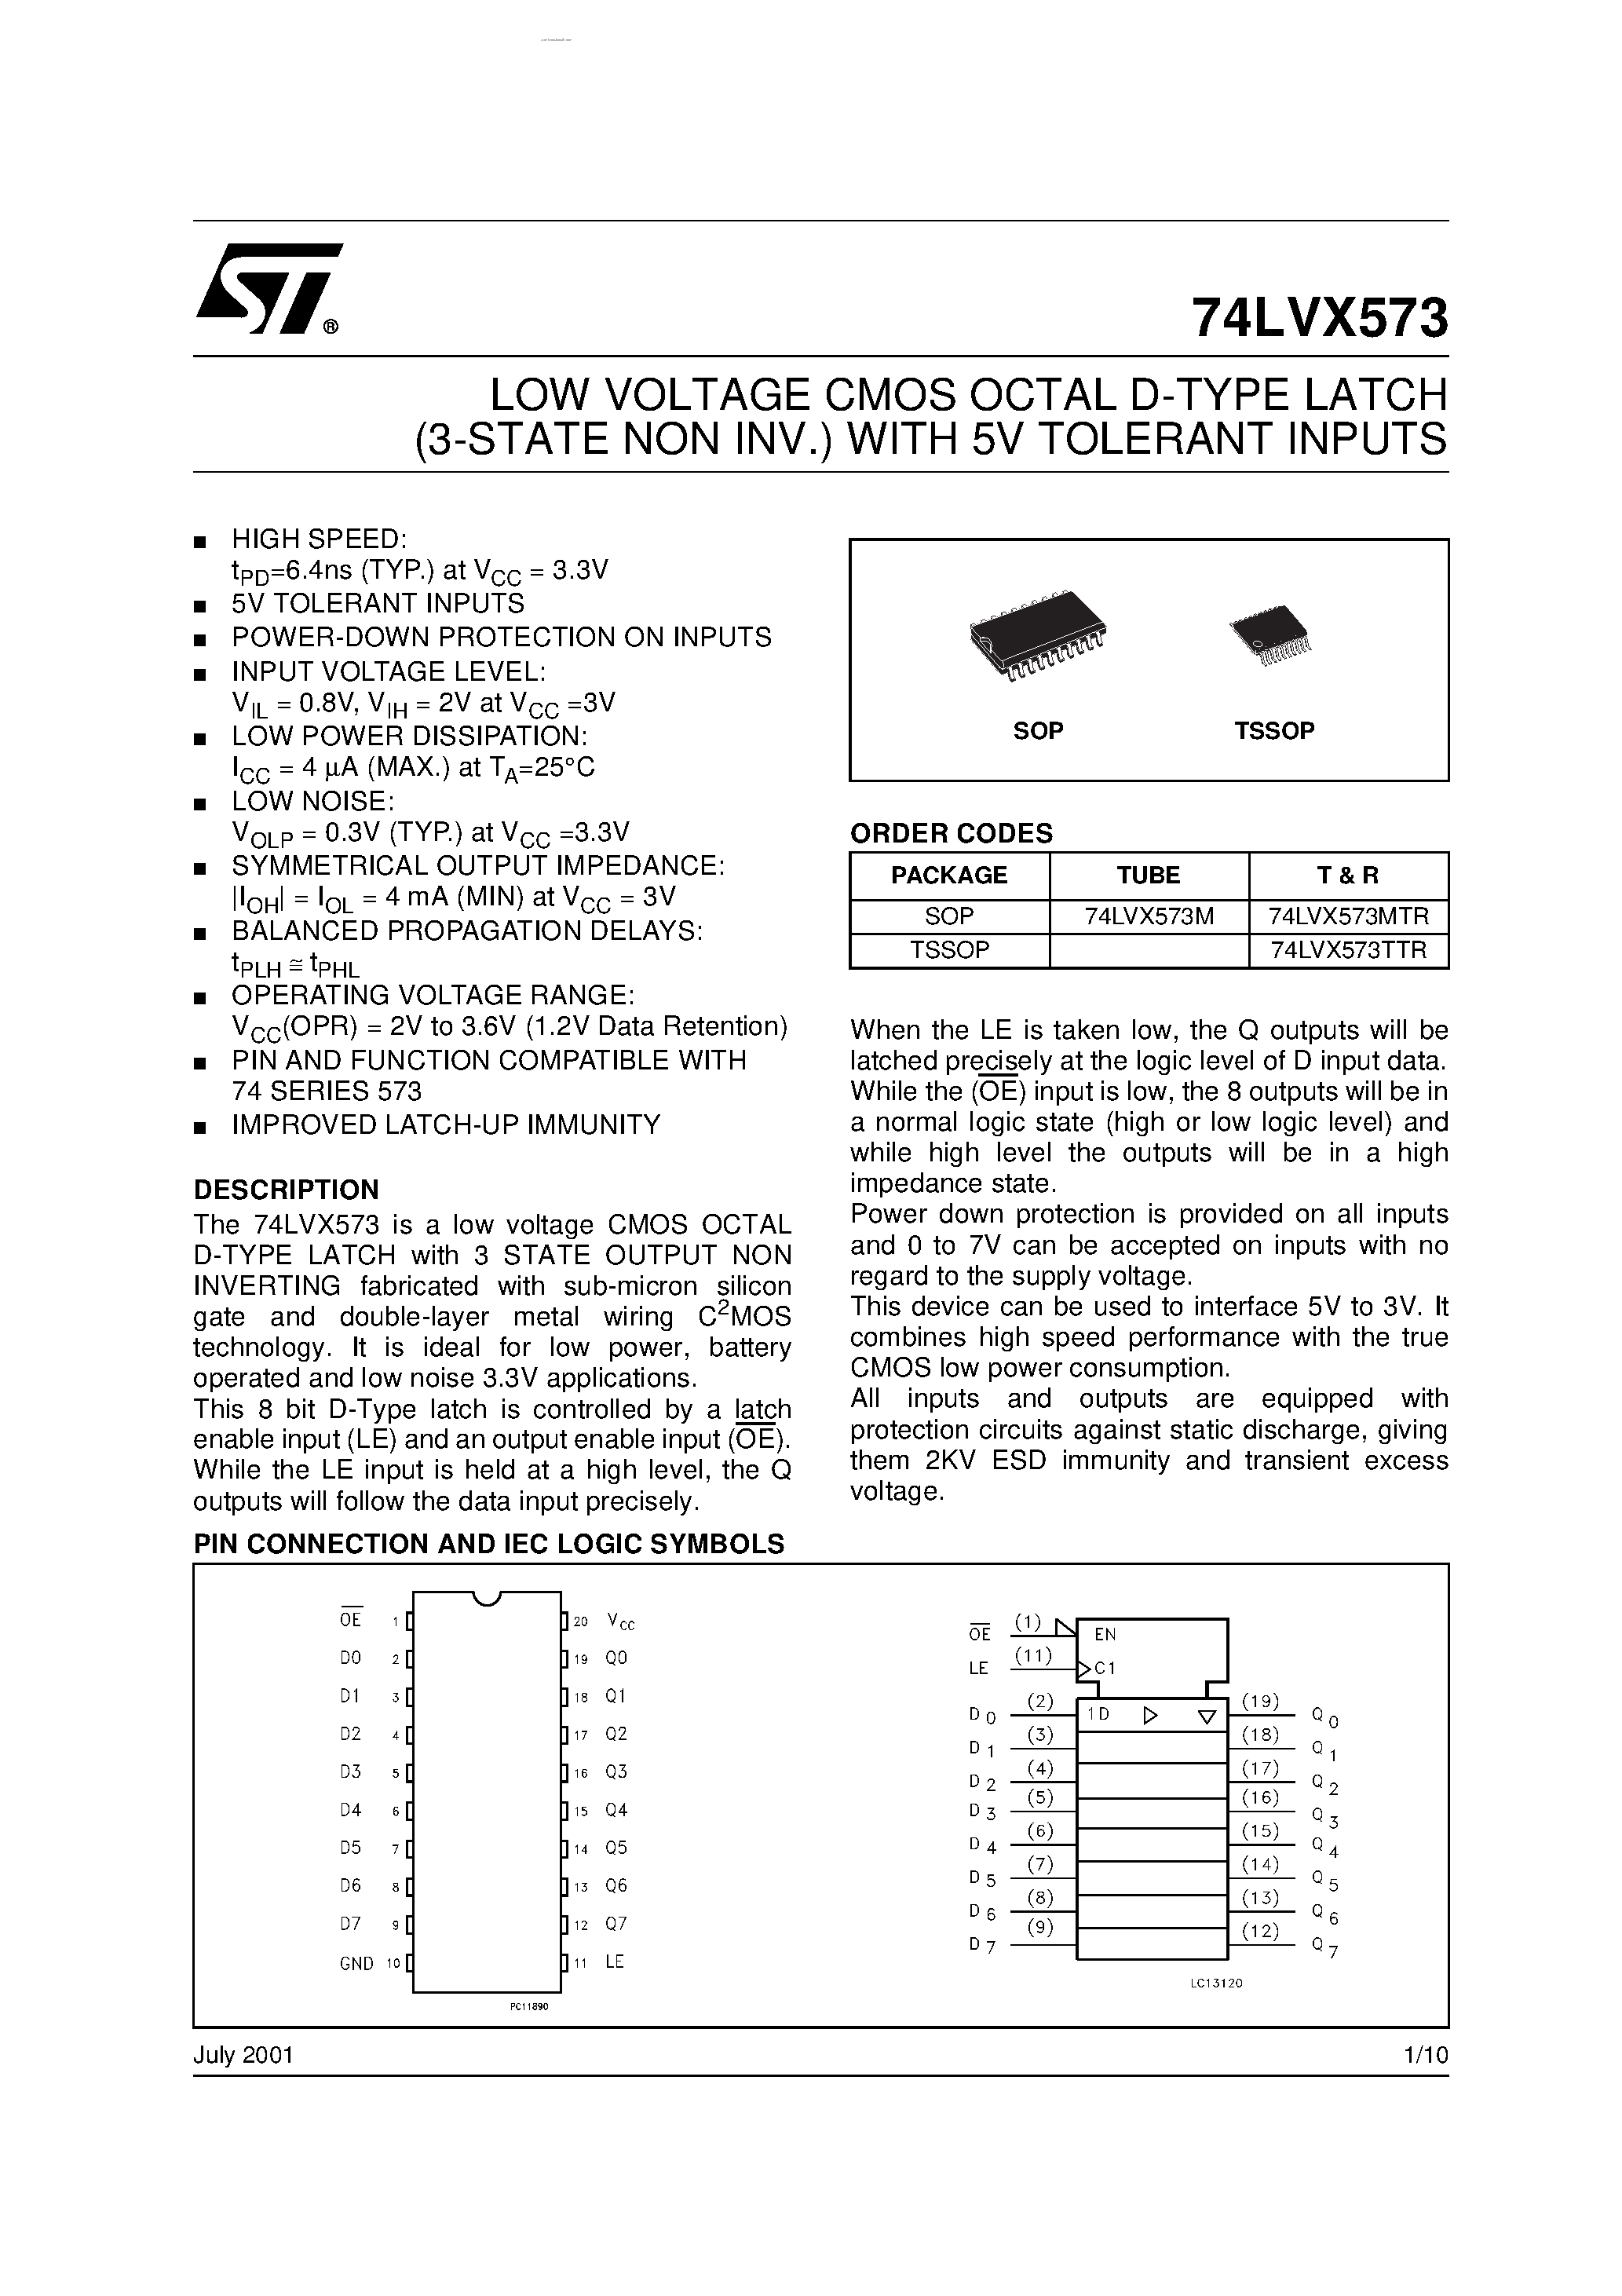 Даташит 74LVX573 - LOW VOLTAGE CMOS OCTAL D-TYPE LATCH страница 1